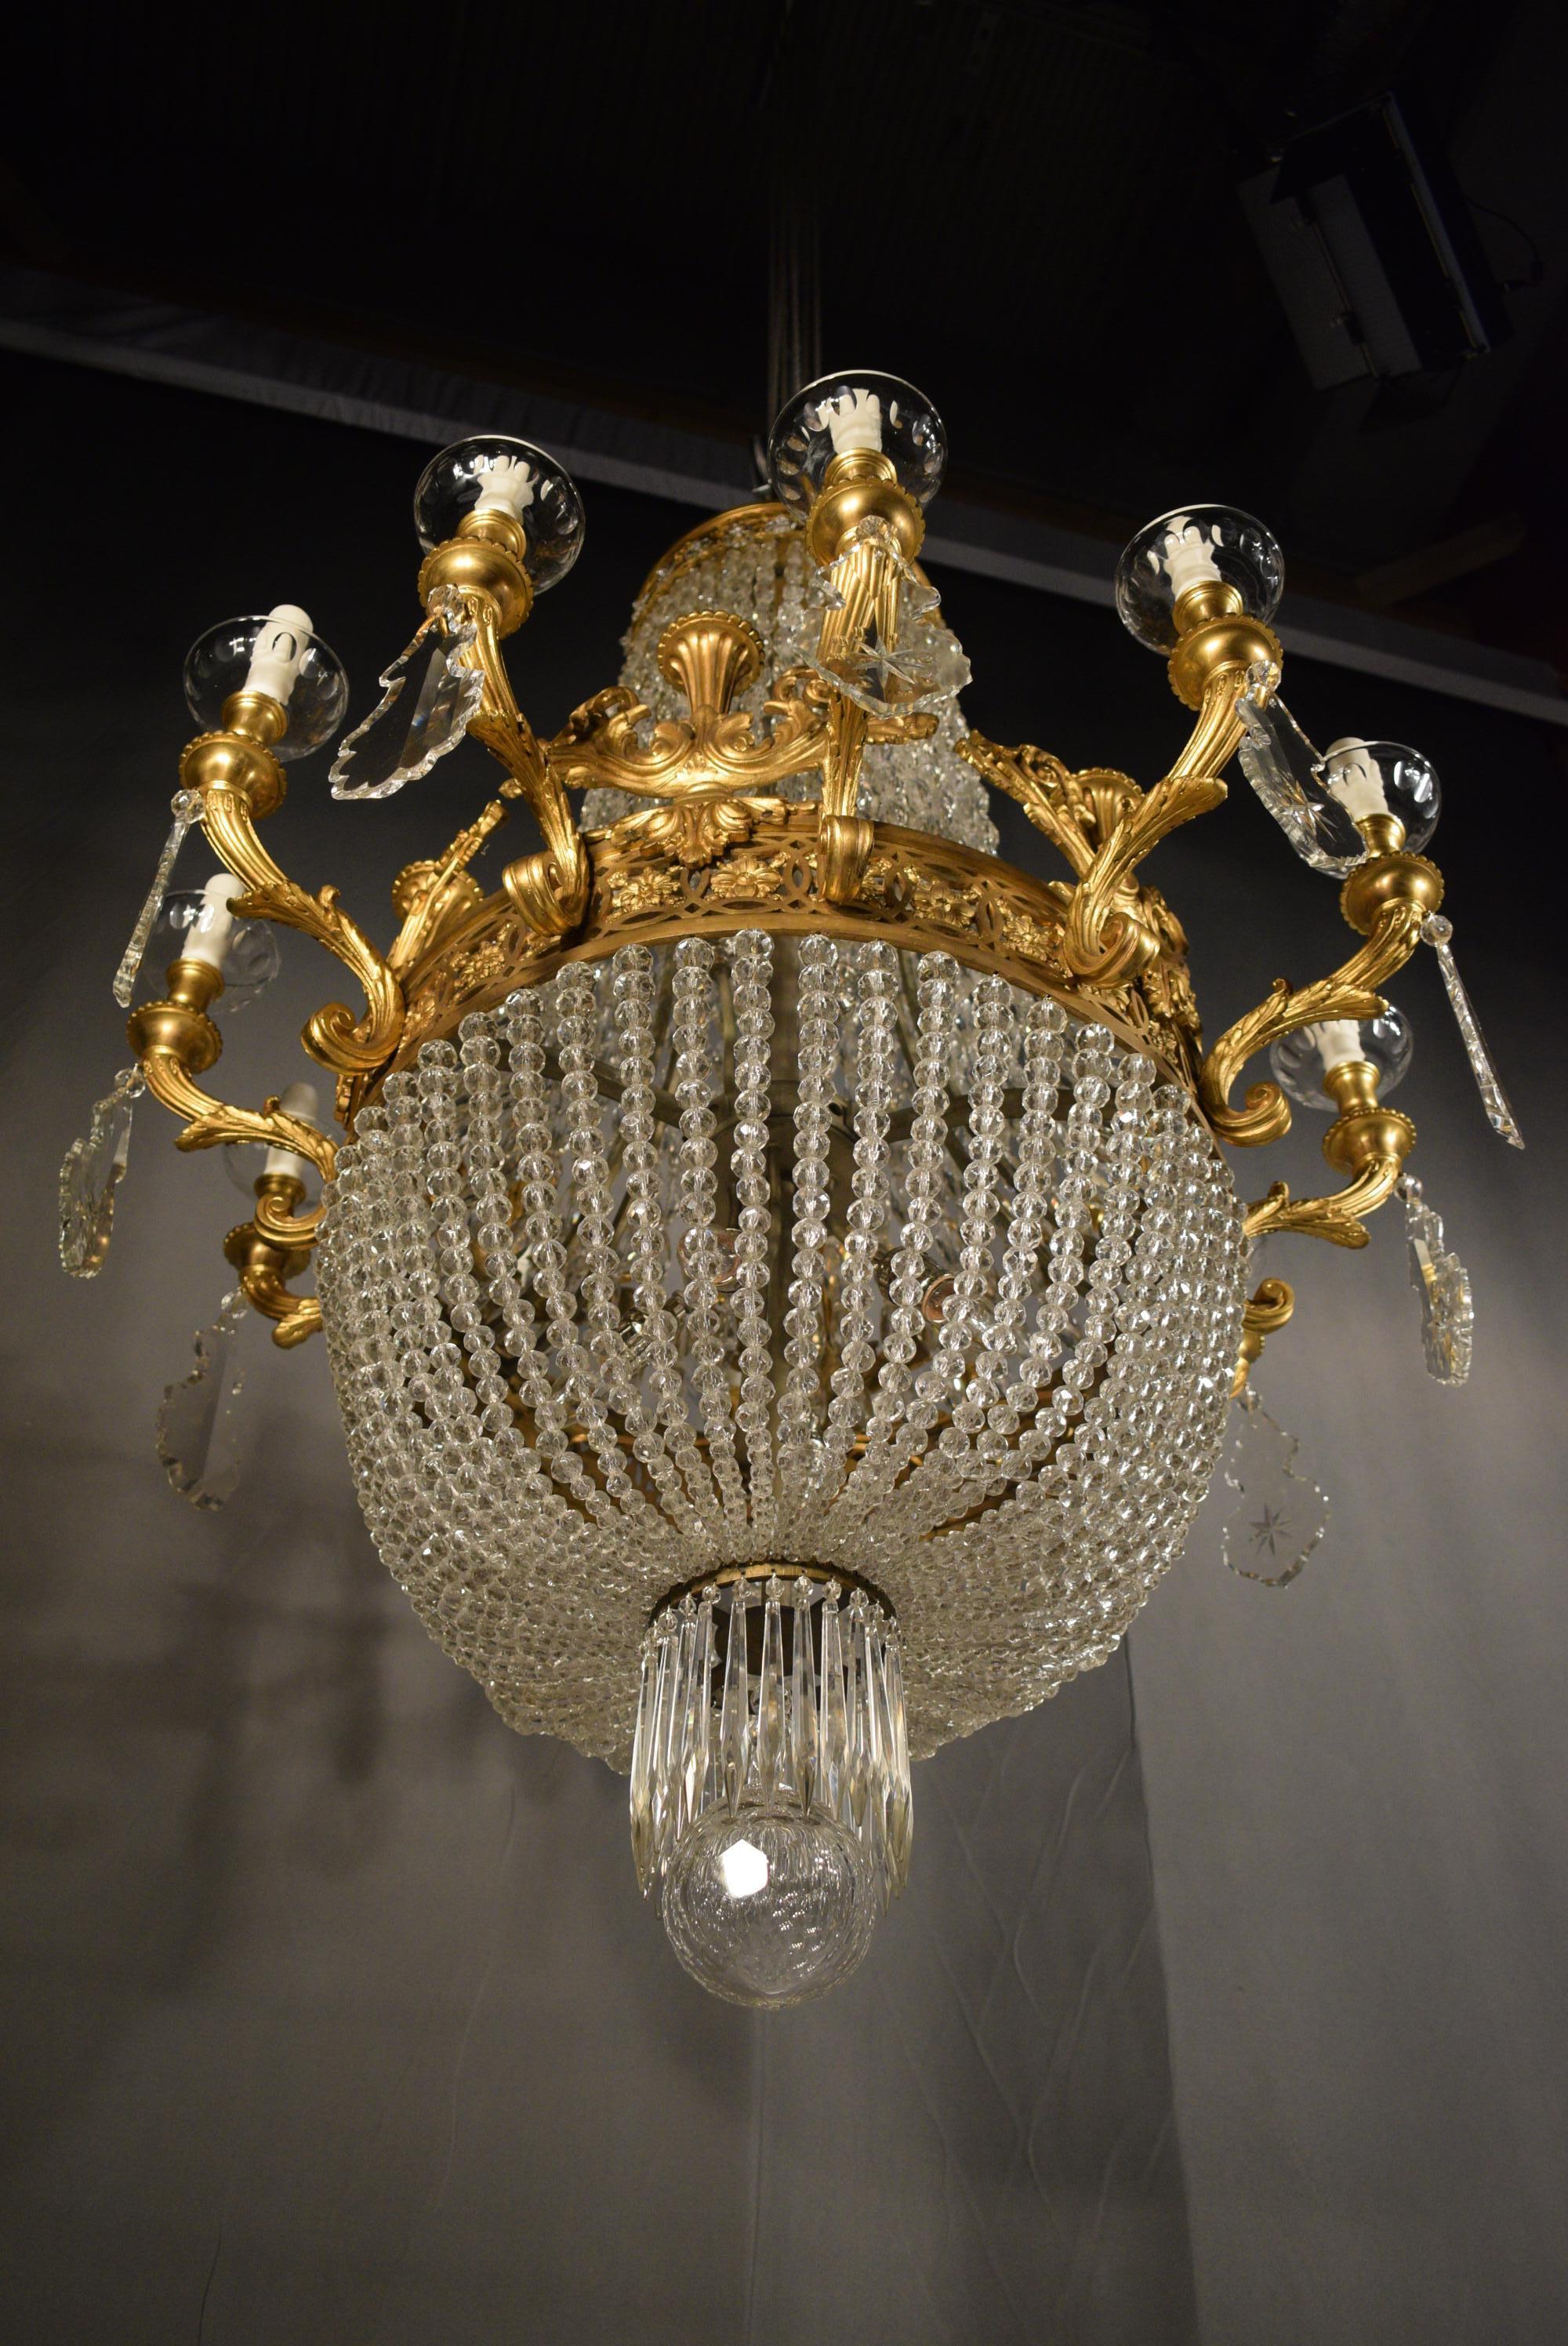 exquisite chandeliers